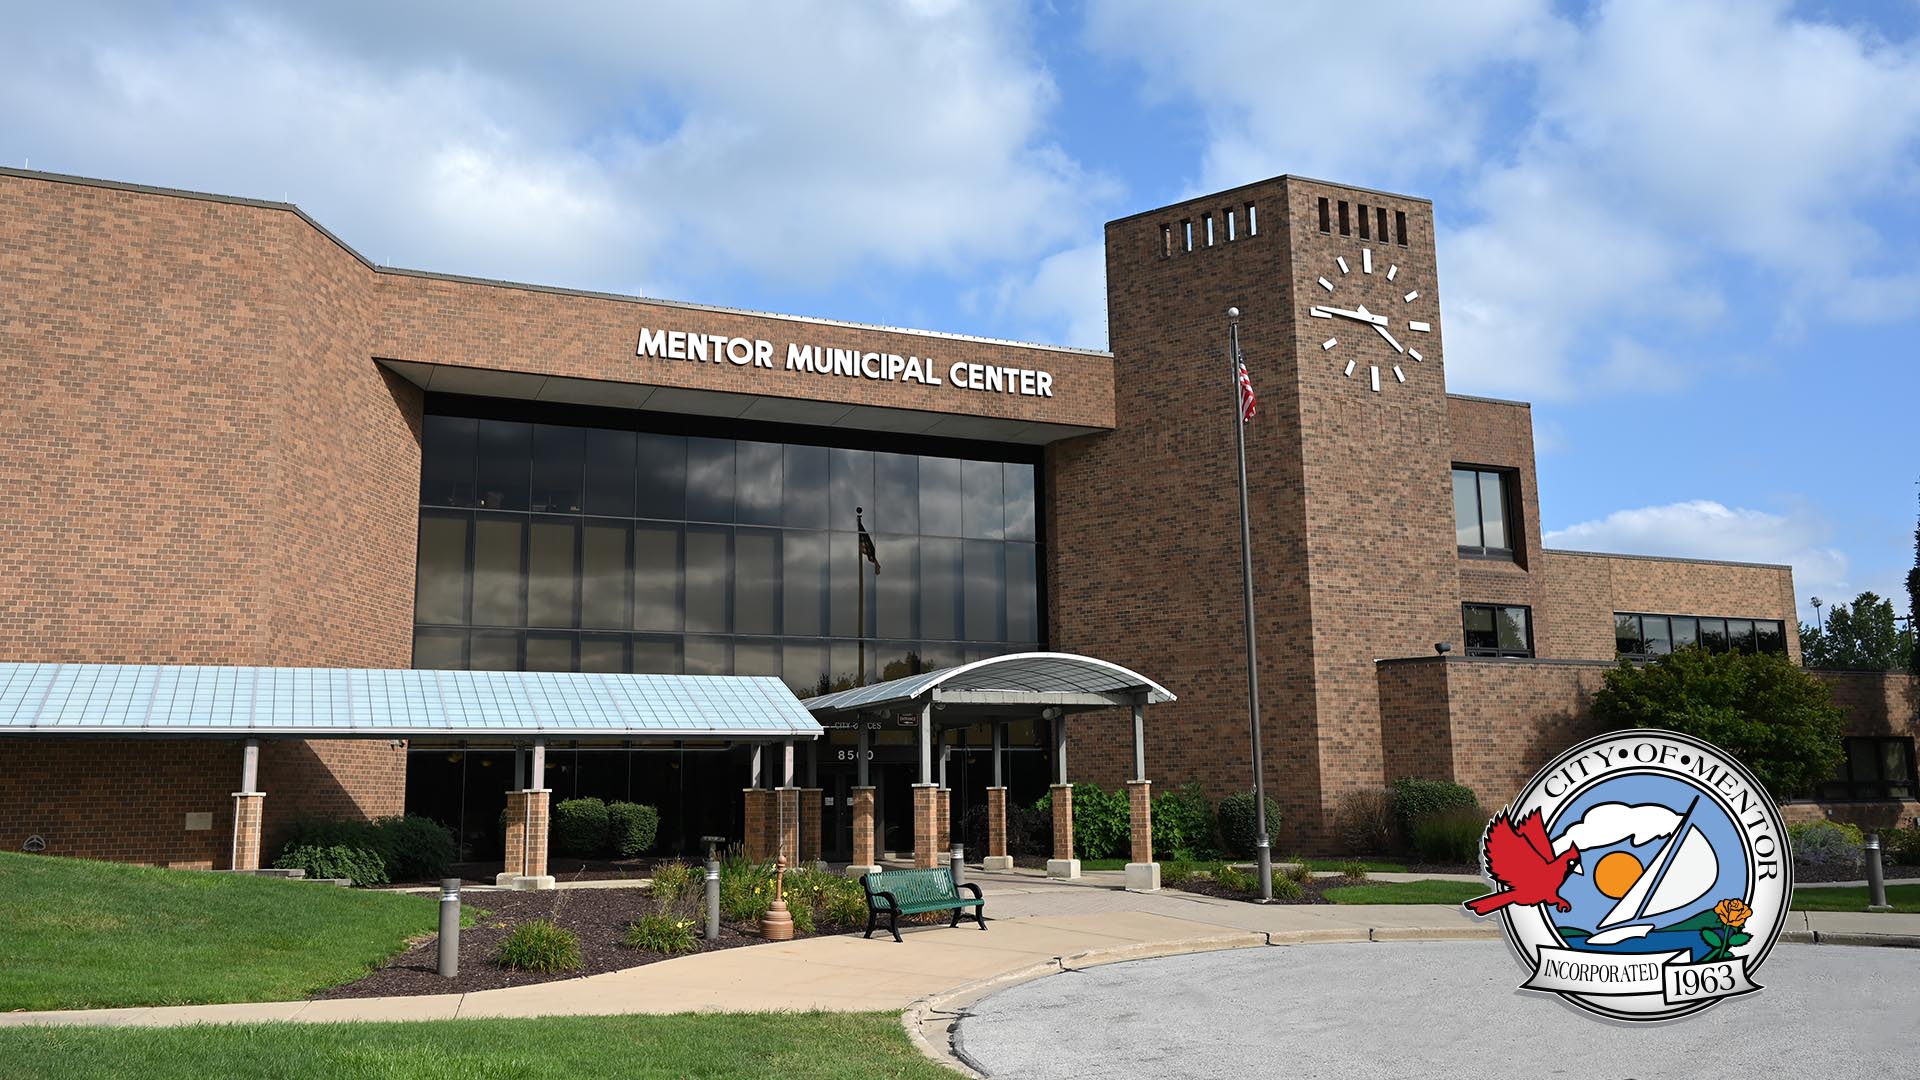 Mentor Municipal Center